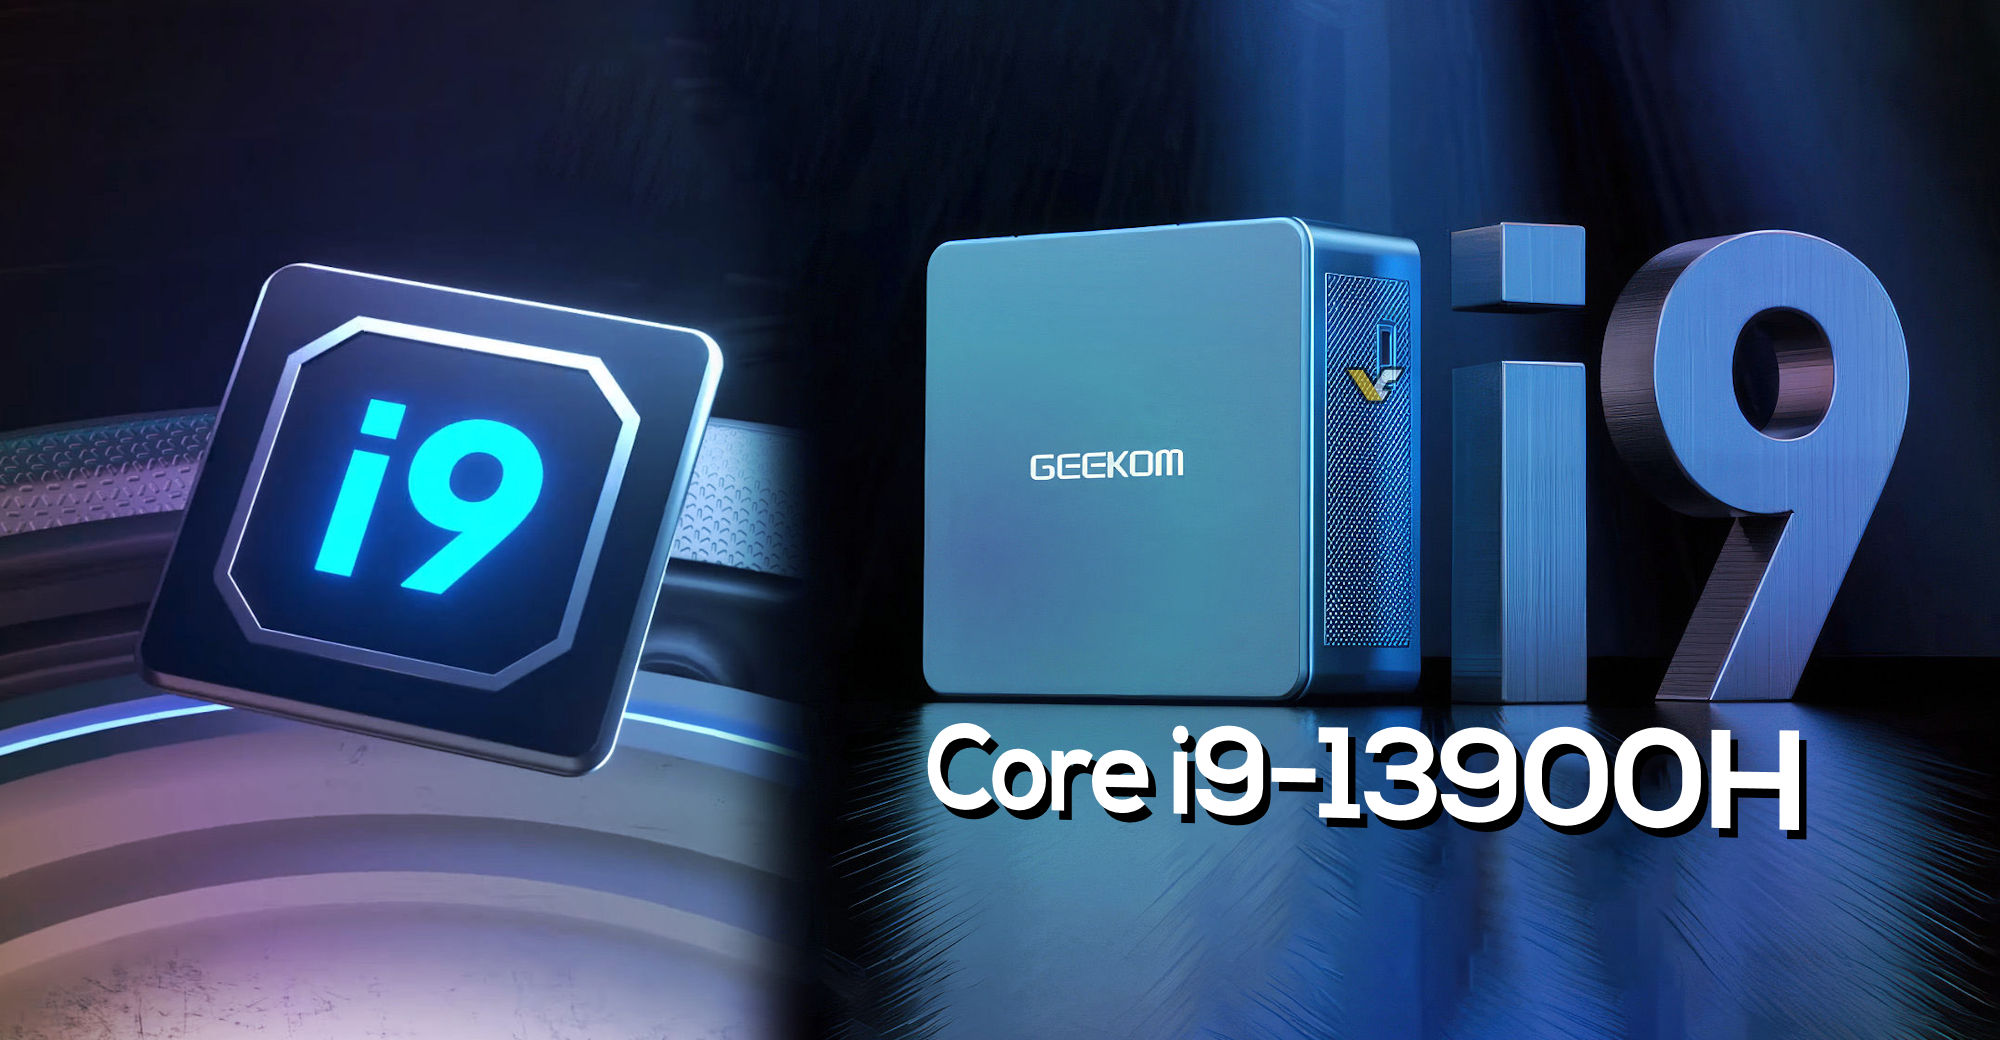 GEEKOM Mini PC Mini IT13, Mini Ordinateur Intel i9-13900H (14